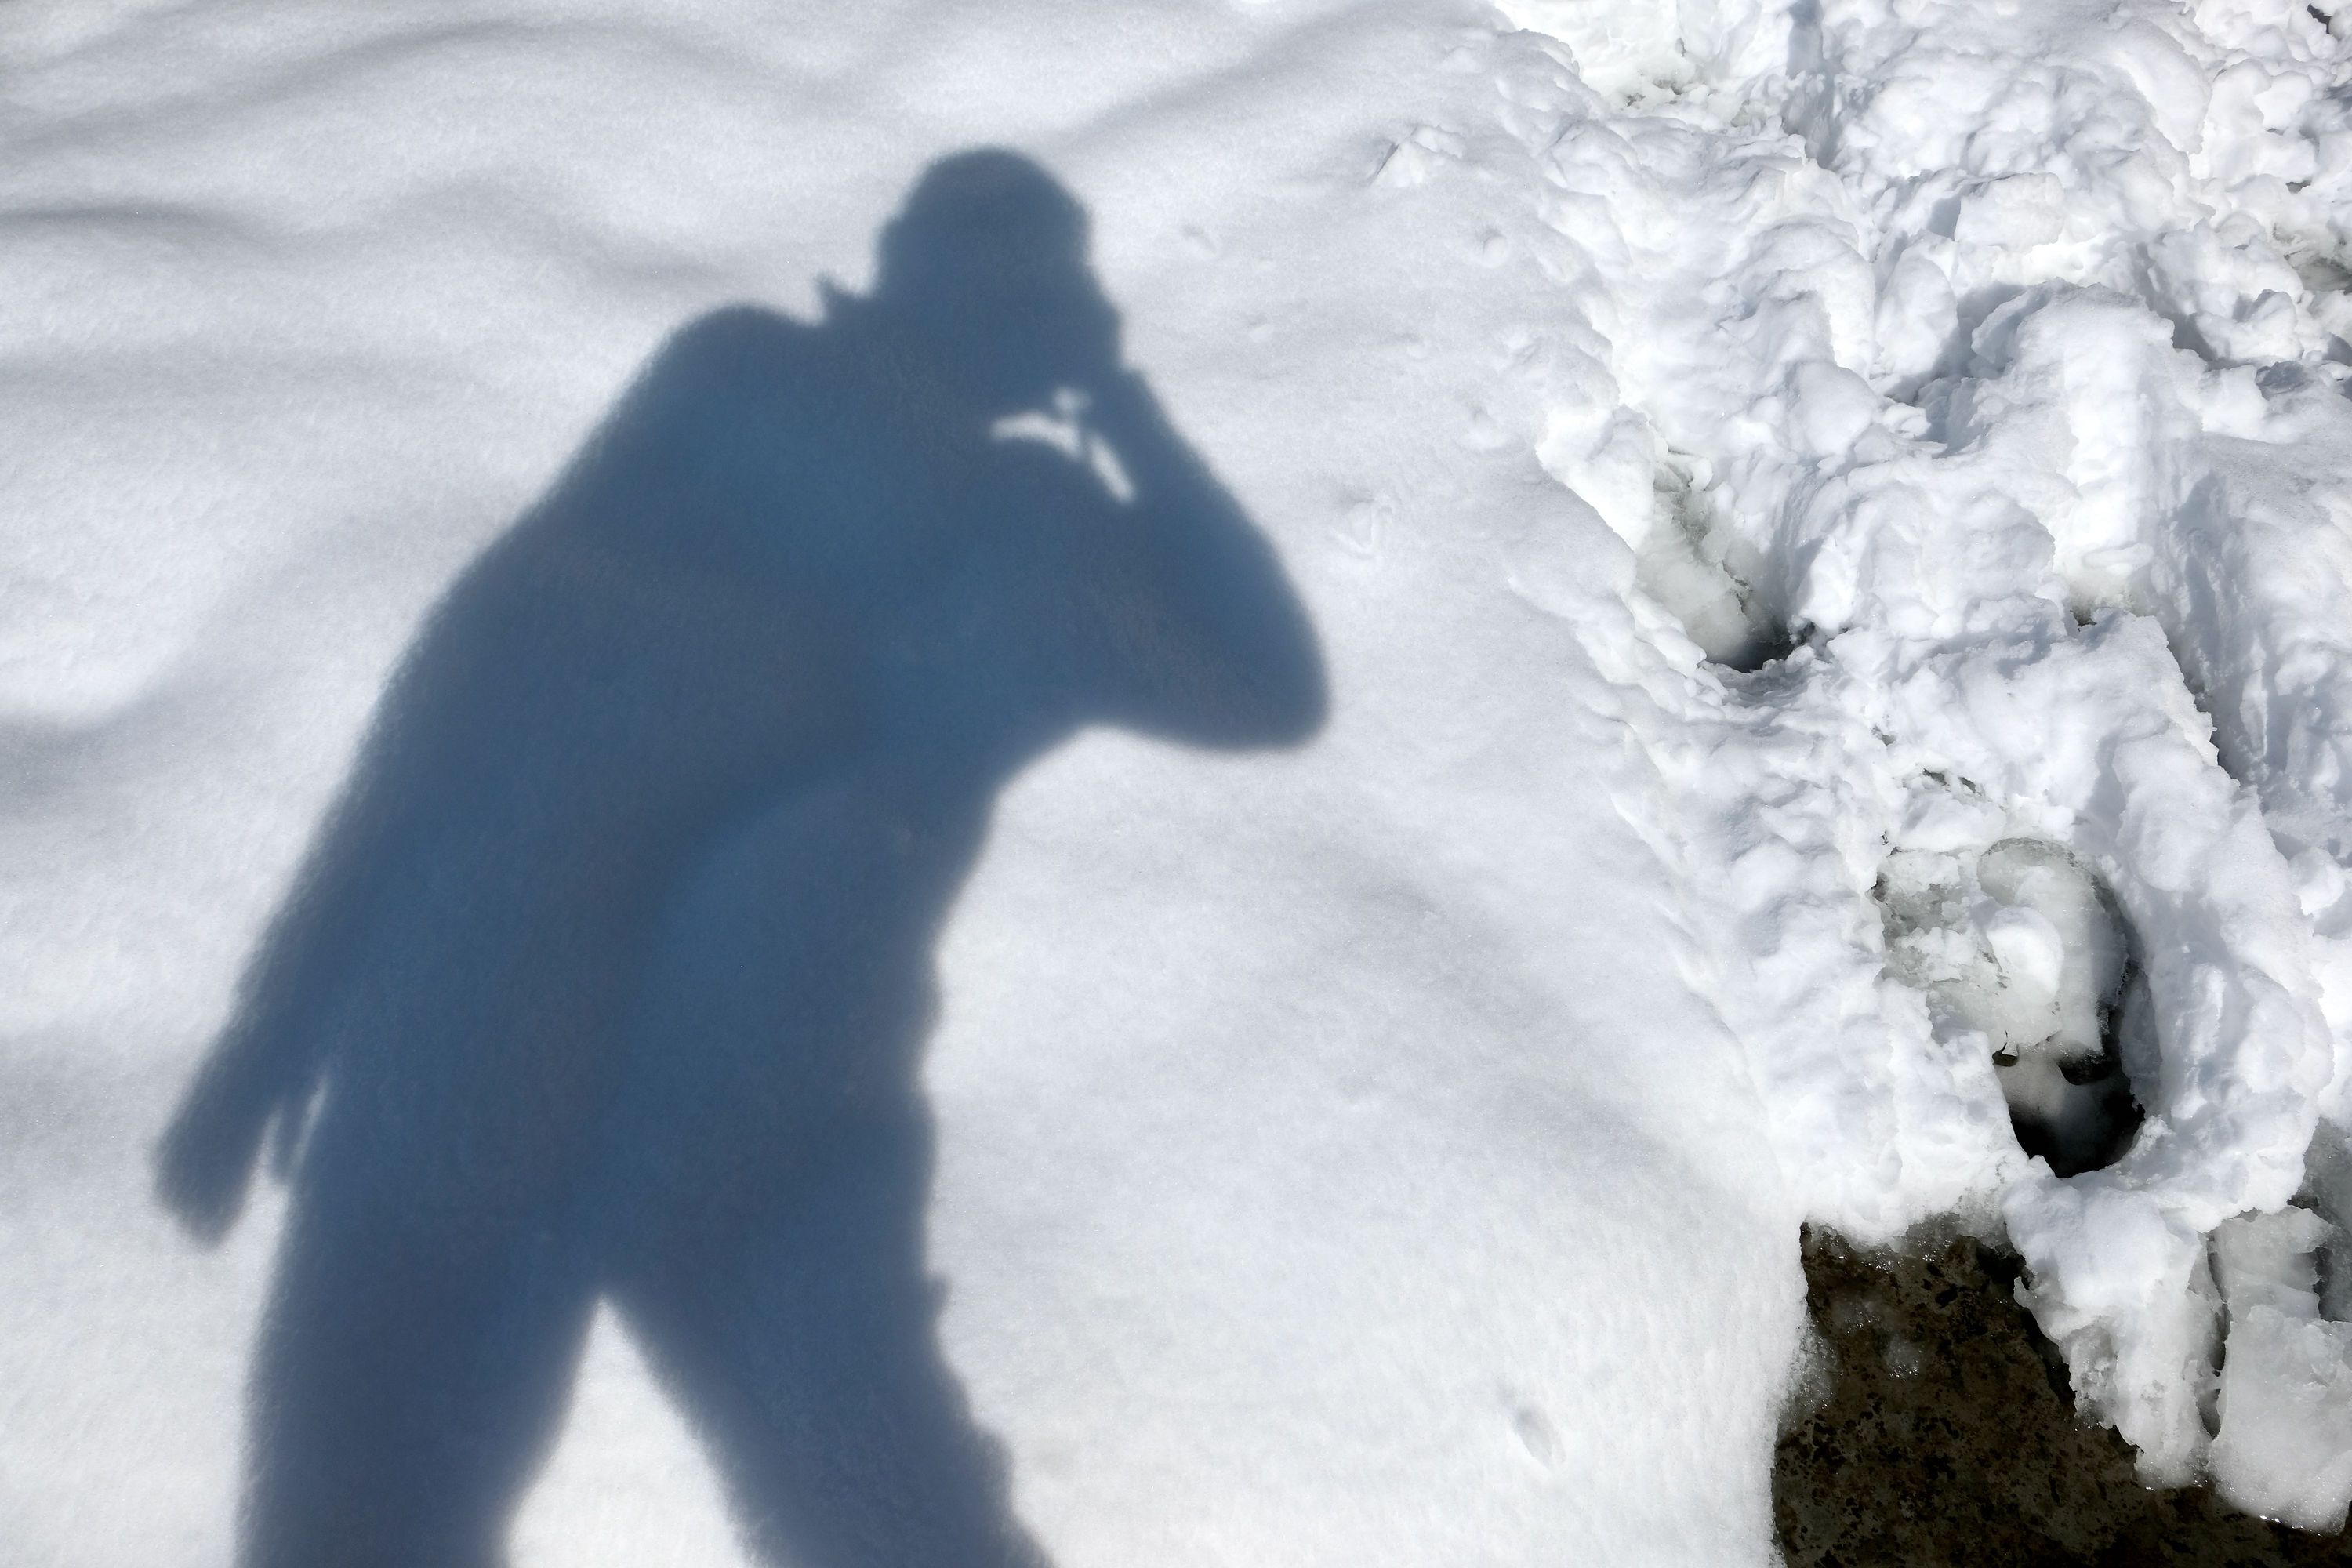 Selfie in the snow. Vashisht, Himachal Pradesh, India. January 2022.